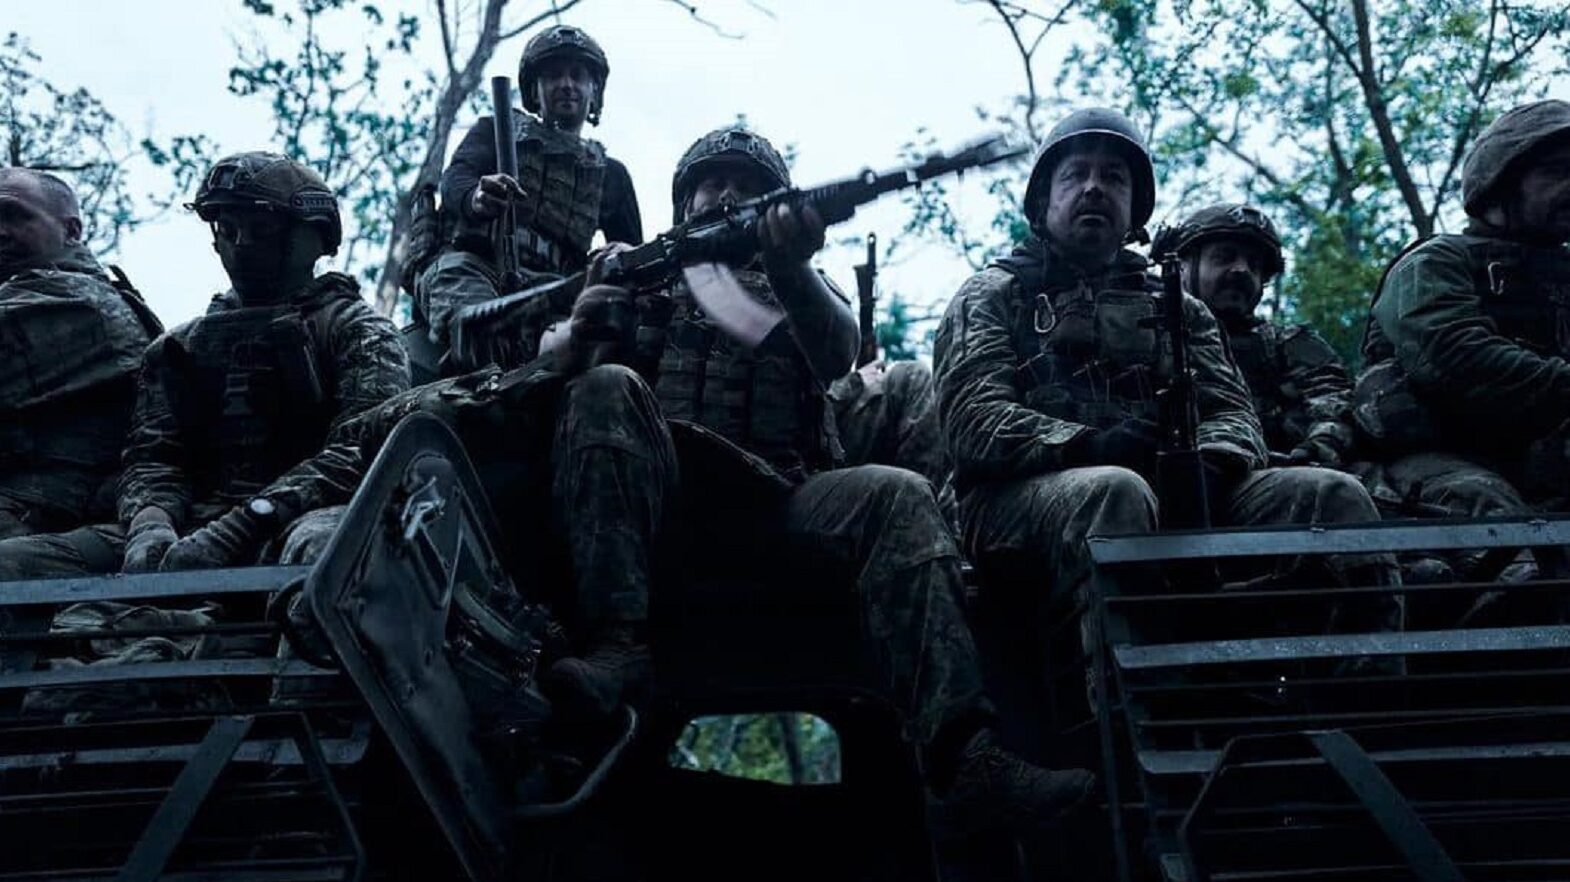 Război în Ucraina, ziua 839. Rusia revendică noi câştiguri teritoriale. Trupele ucrainene sunt demoralizate